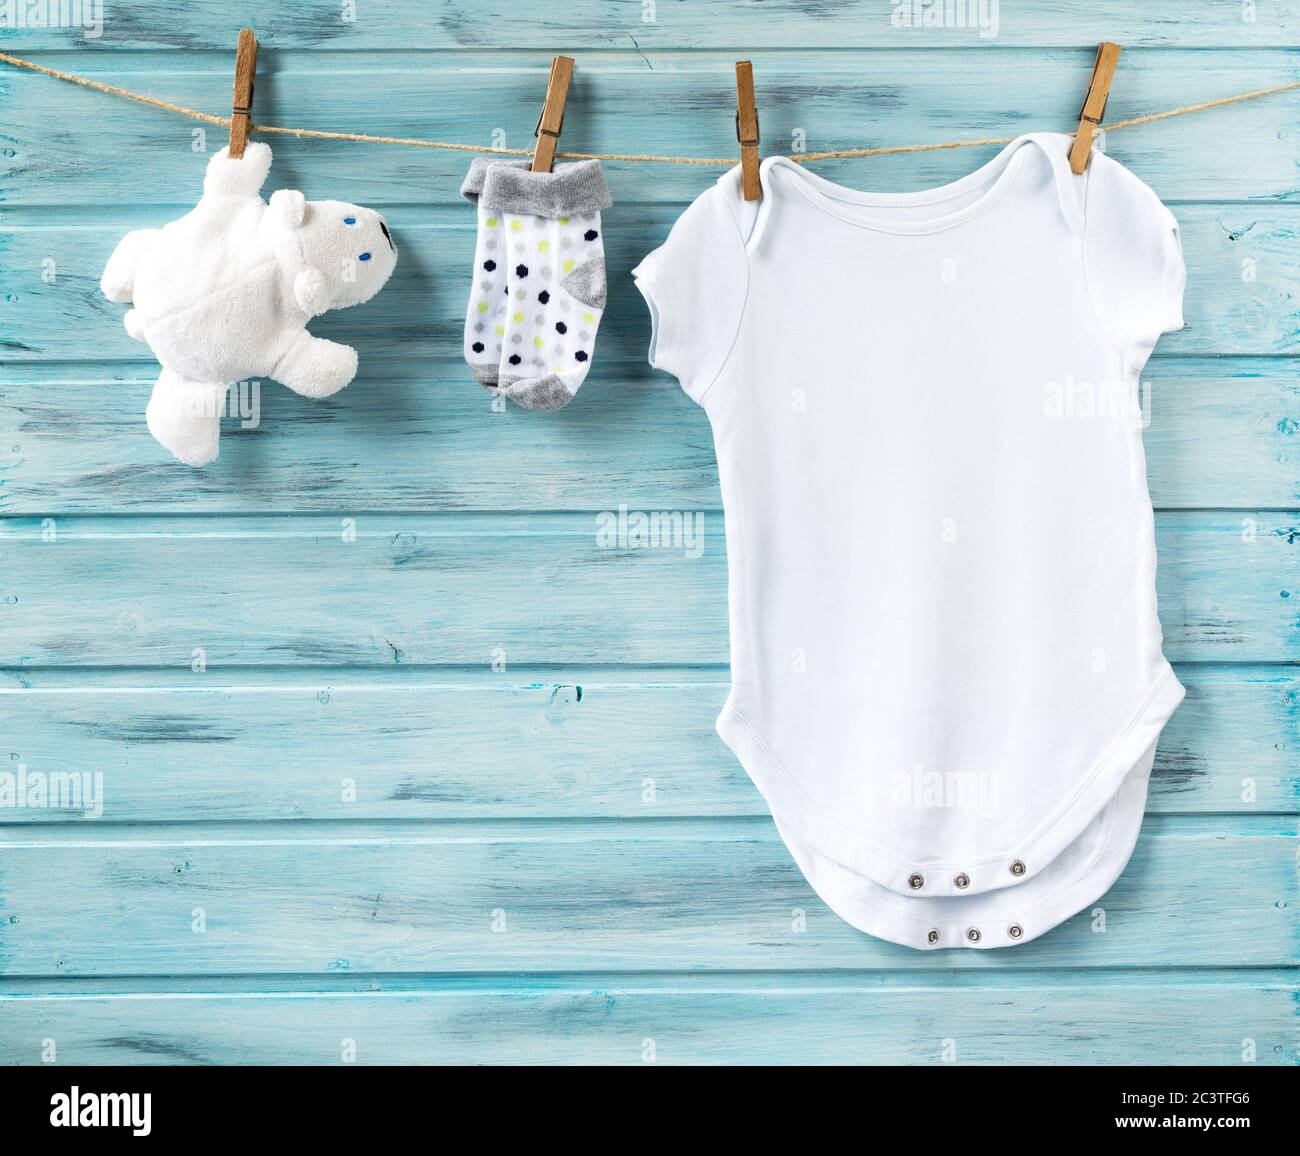 Vêtements blancs pour bébé garçon, jouet ours blanc et petites chaussettes sur une corde à linge, fond en bois bleu Banque D'Images